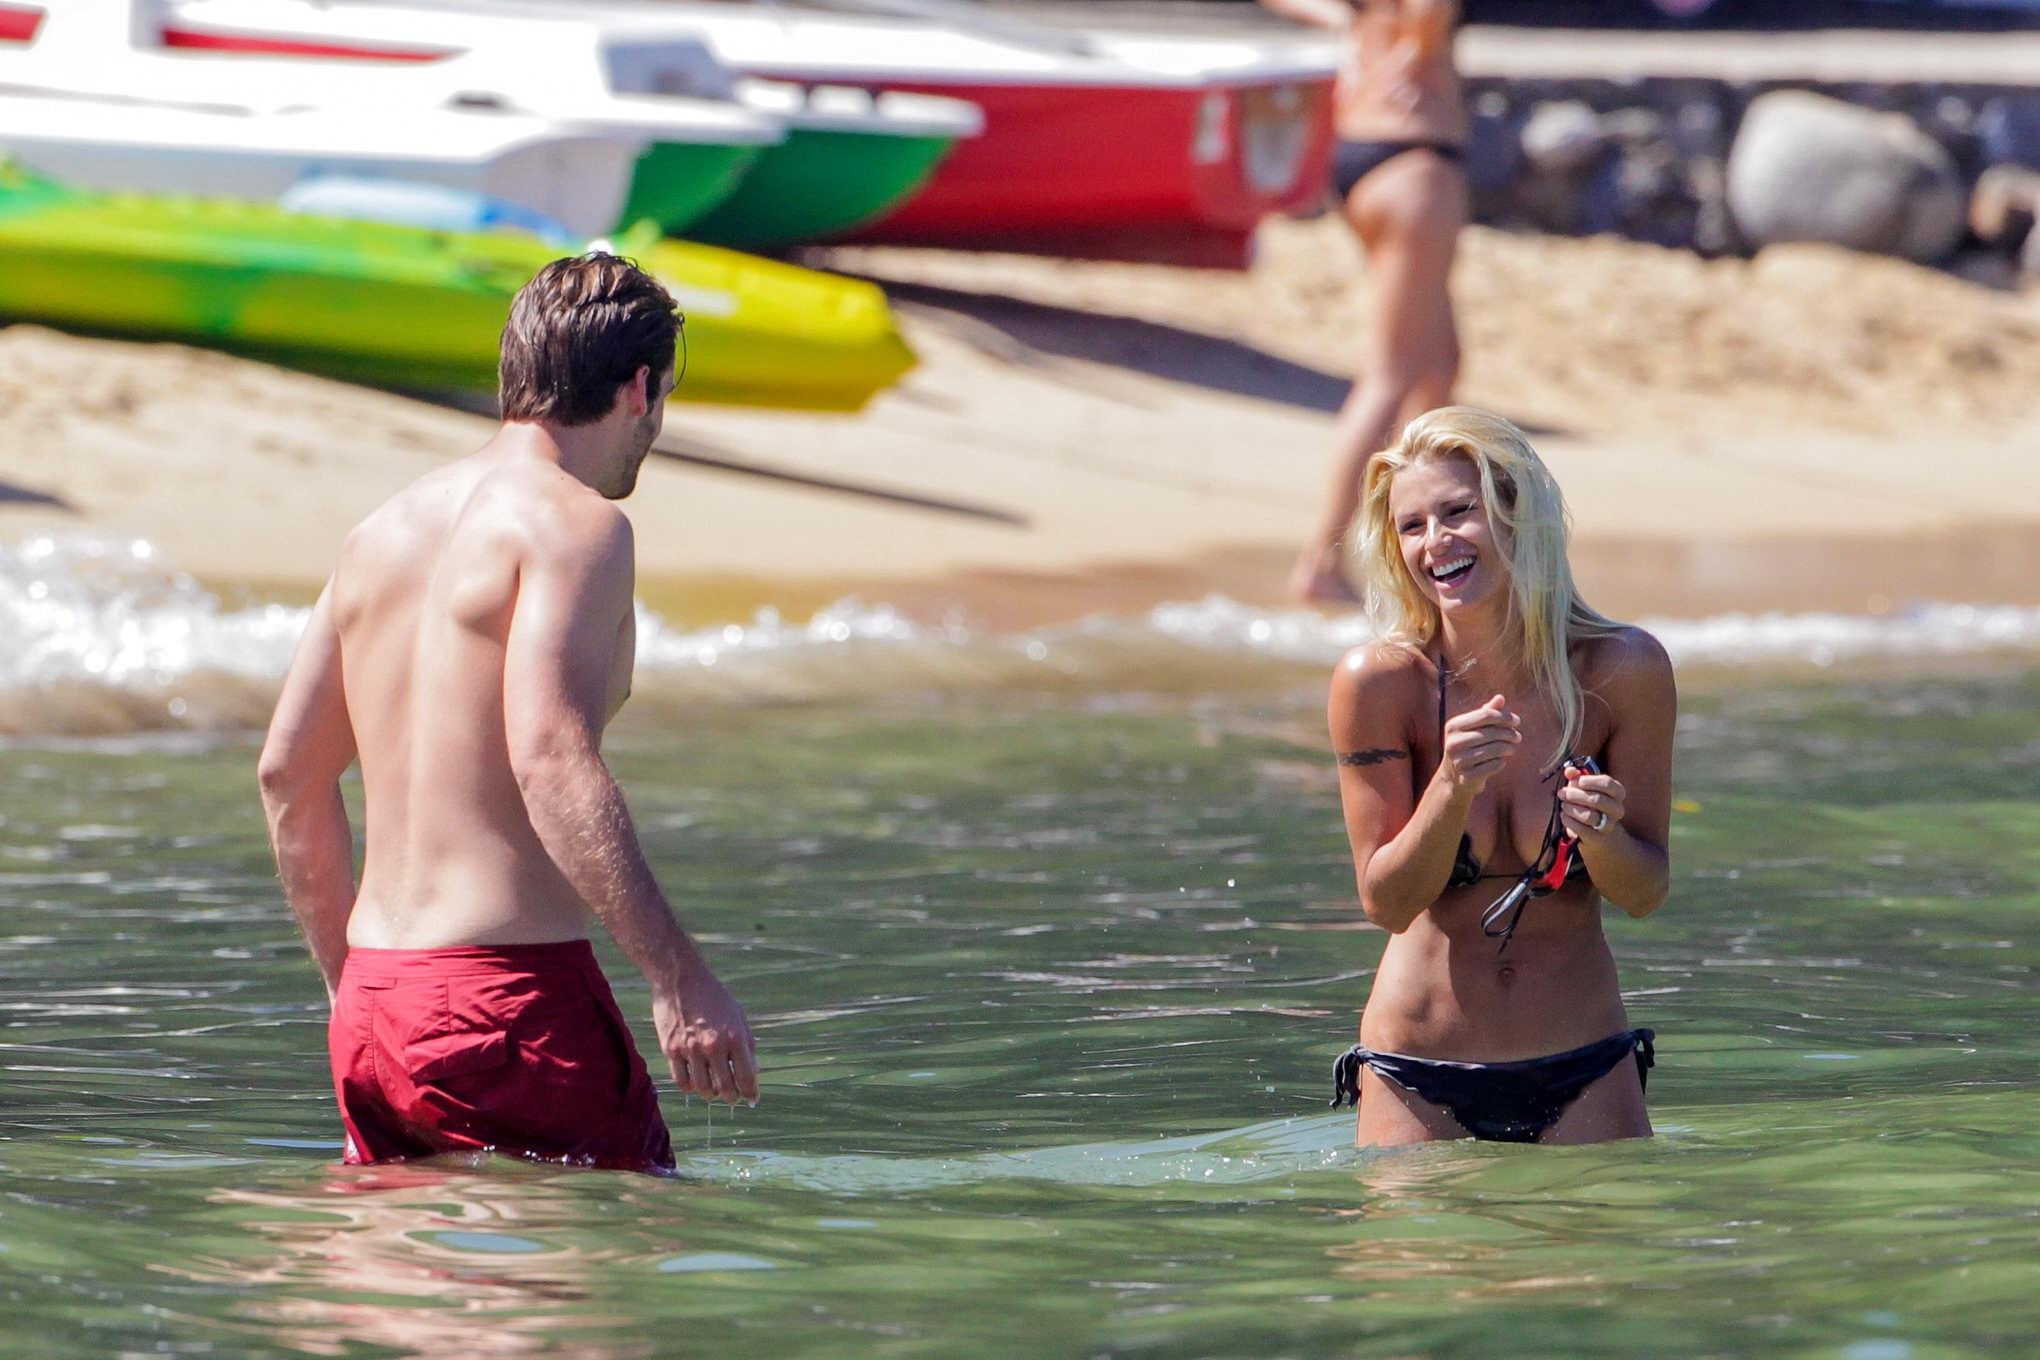 Michelle hunziker en bikini de camuflaje nocturno besándose con su novio en una playa 
 #75254198